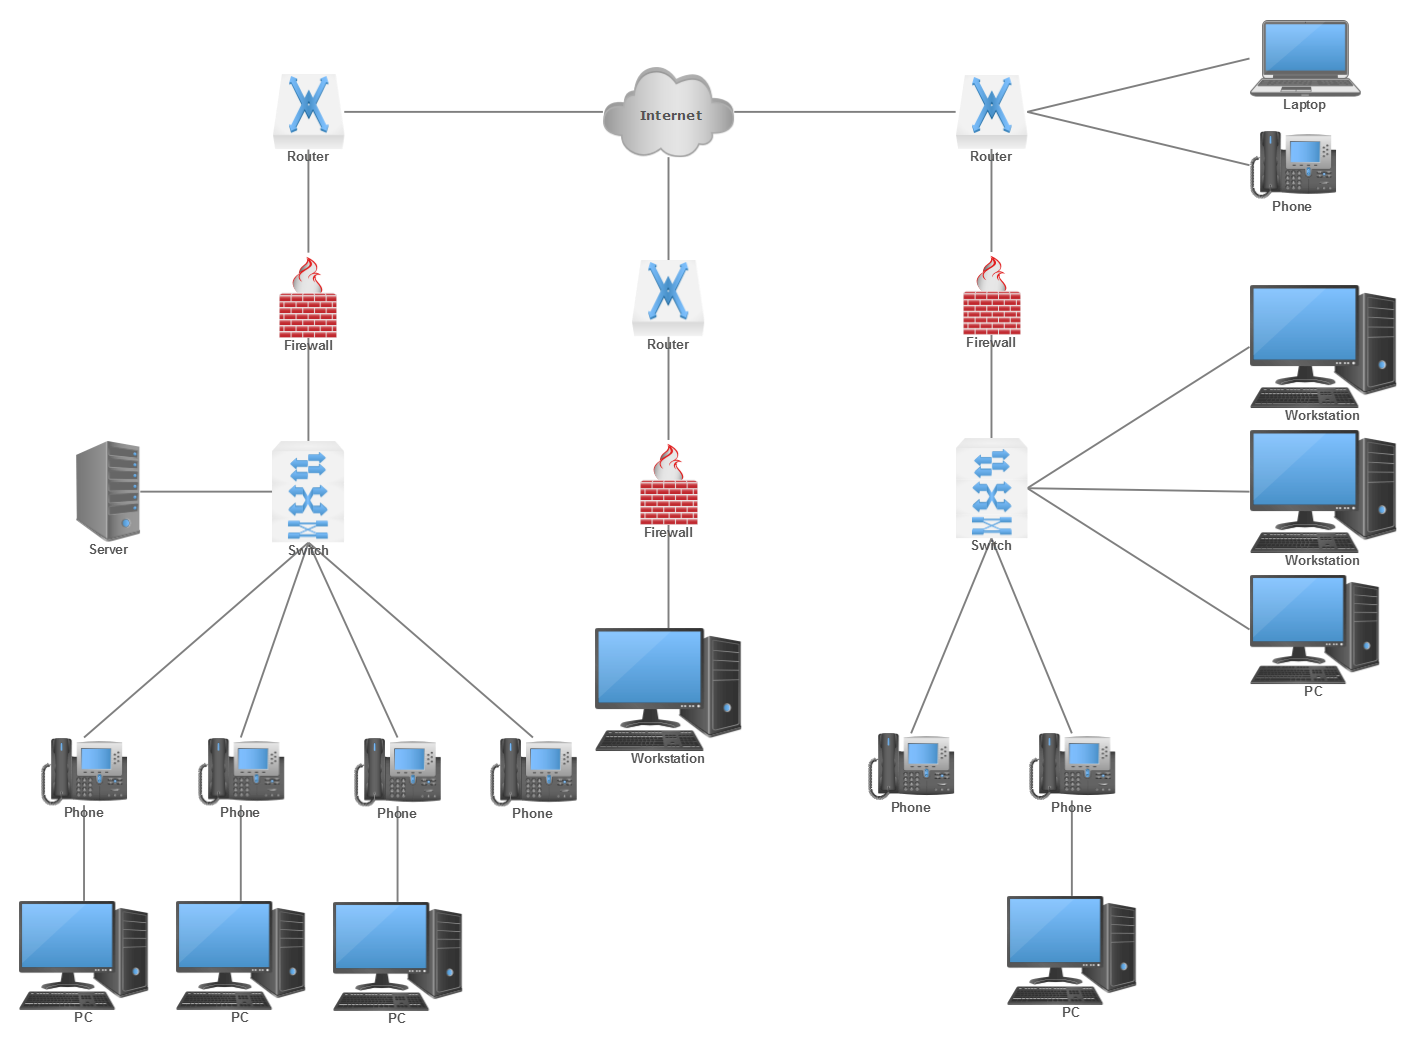 Network Diagram Tool For Mac